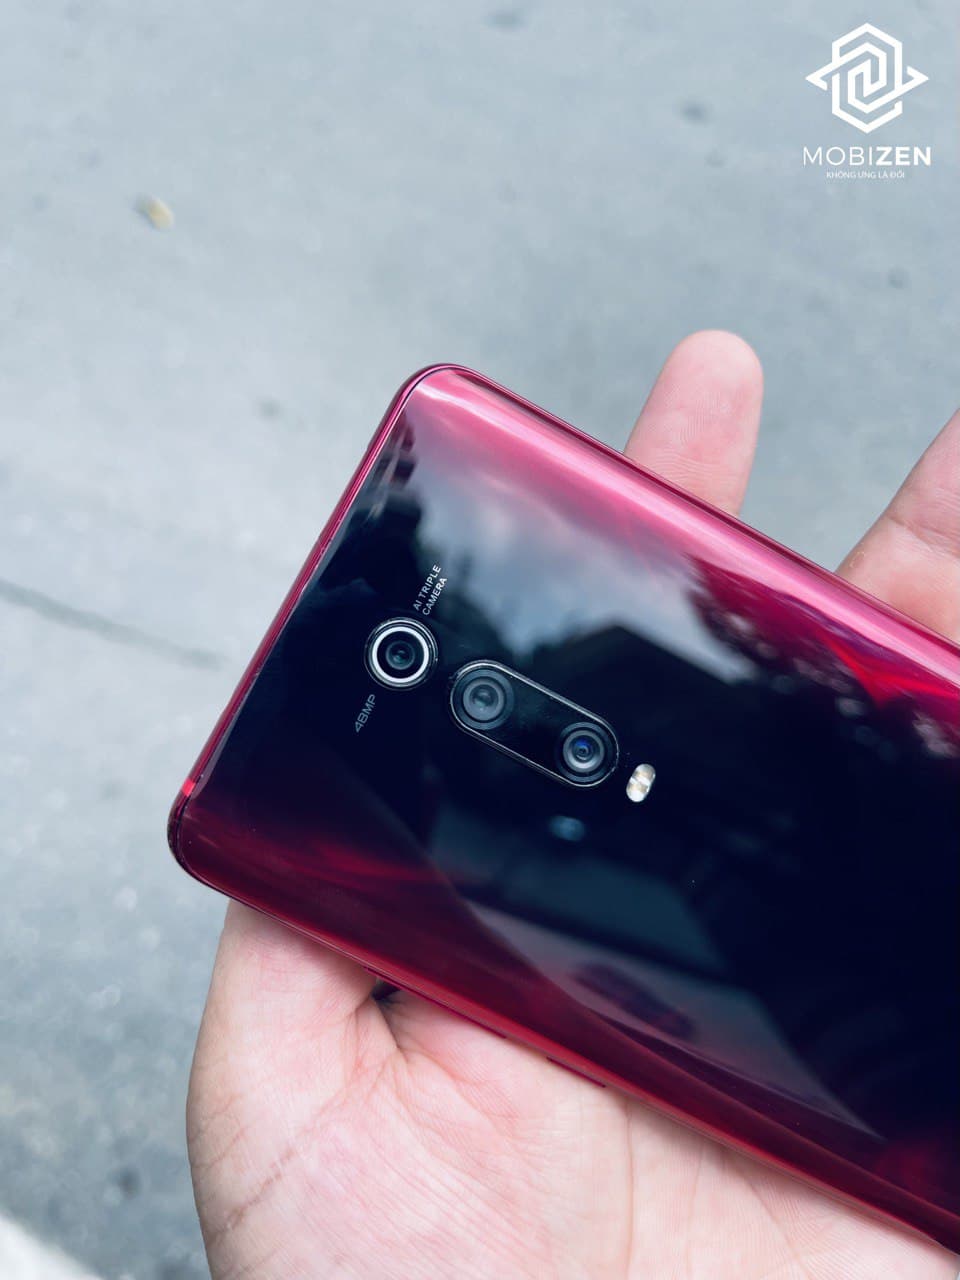 Camera sau của điện thoại Xiaomi Mi 9T (Redmi K20) chính hãng